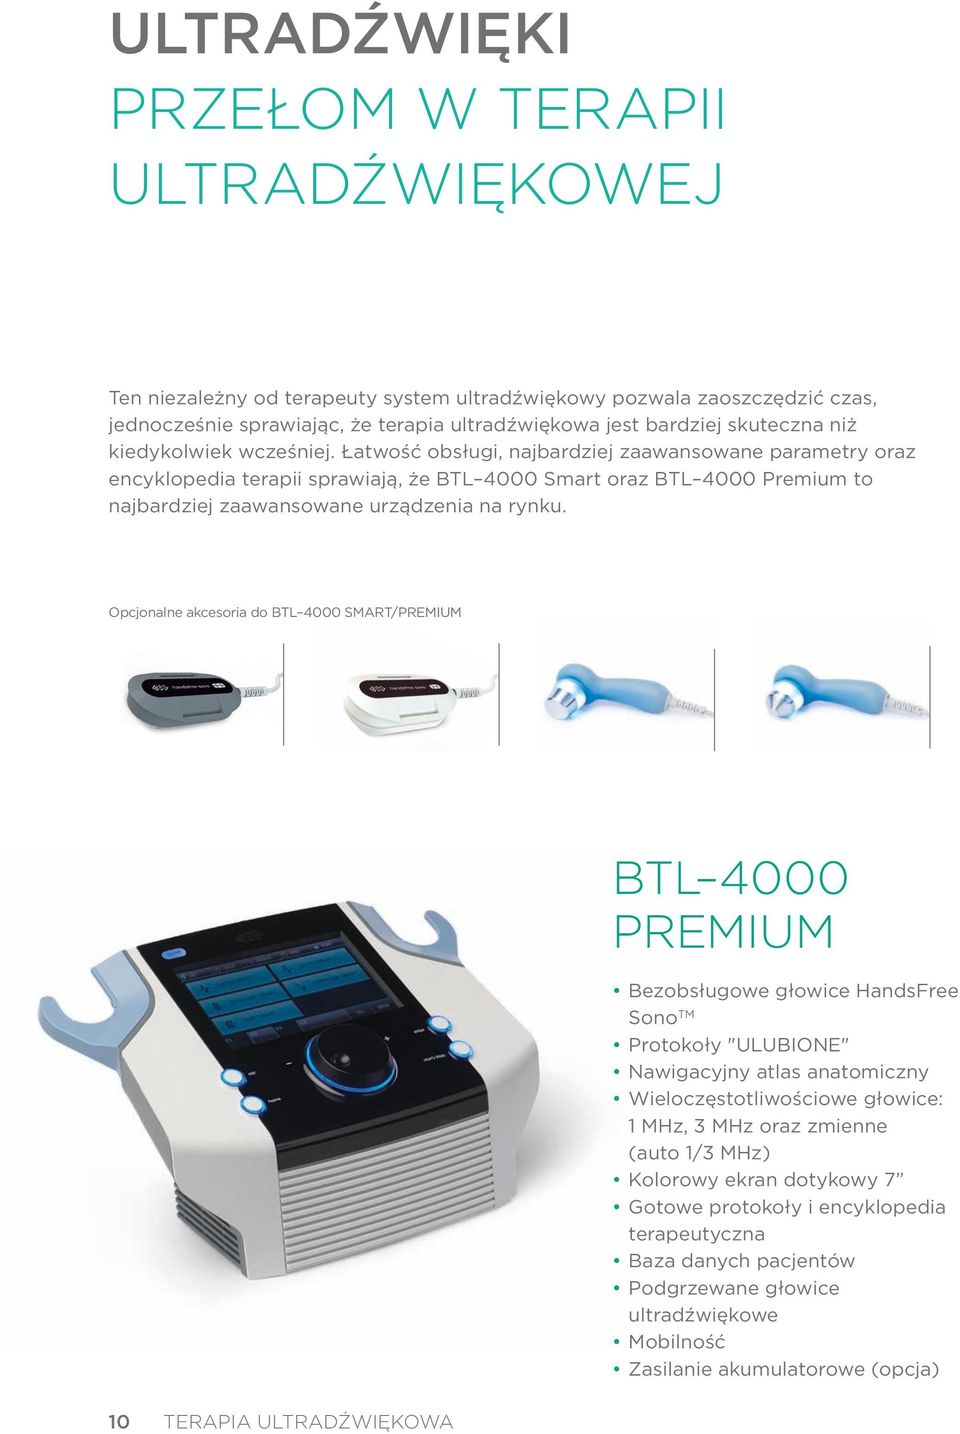 Łatwość obsługi, najbardziej zaawansowane parametry oraz encyklopedia terapii sprawiają, że BTL 4000 Smart oraz BTL 4000 Premium to najbardziej zaawansowane urządzenia na rynku.